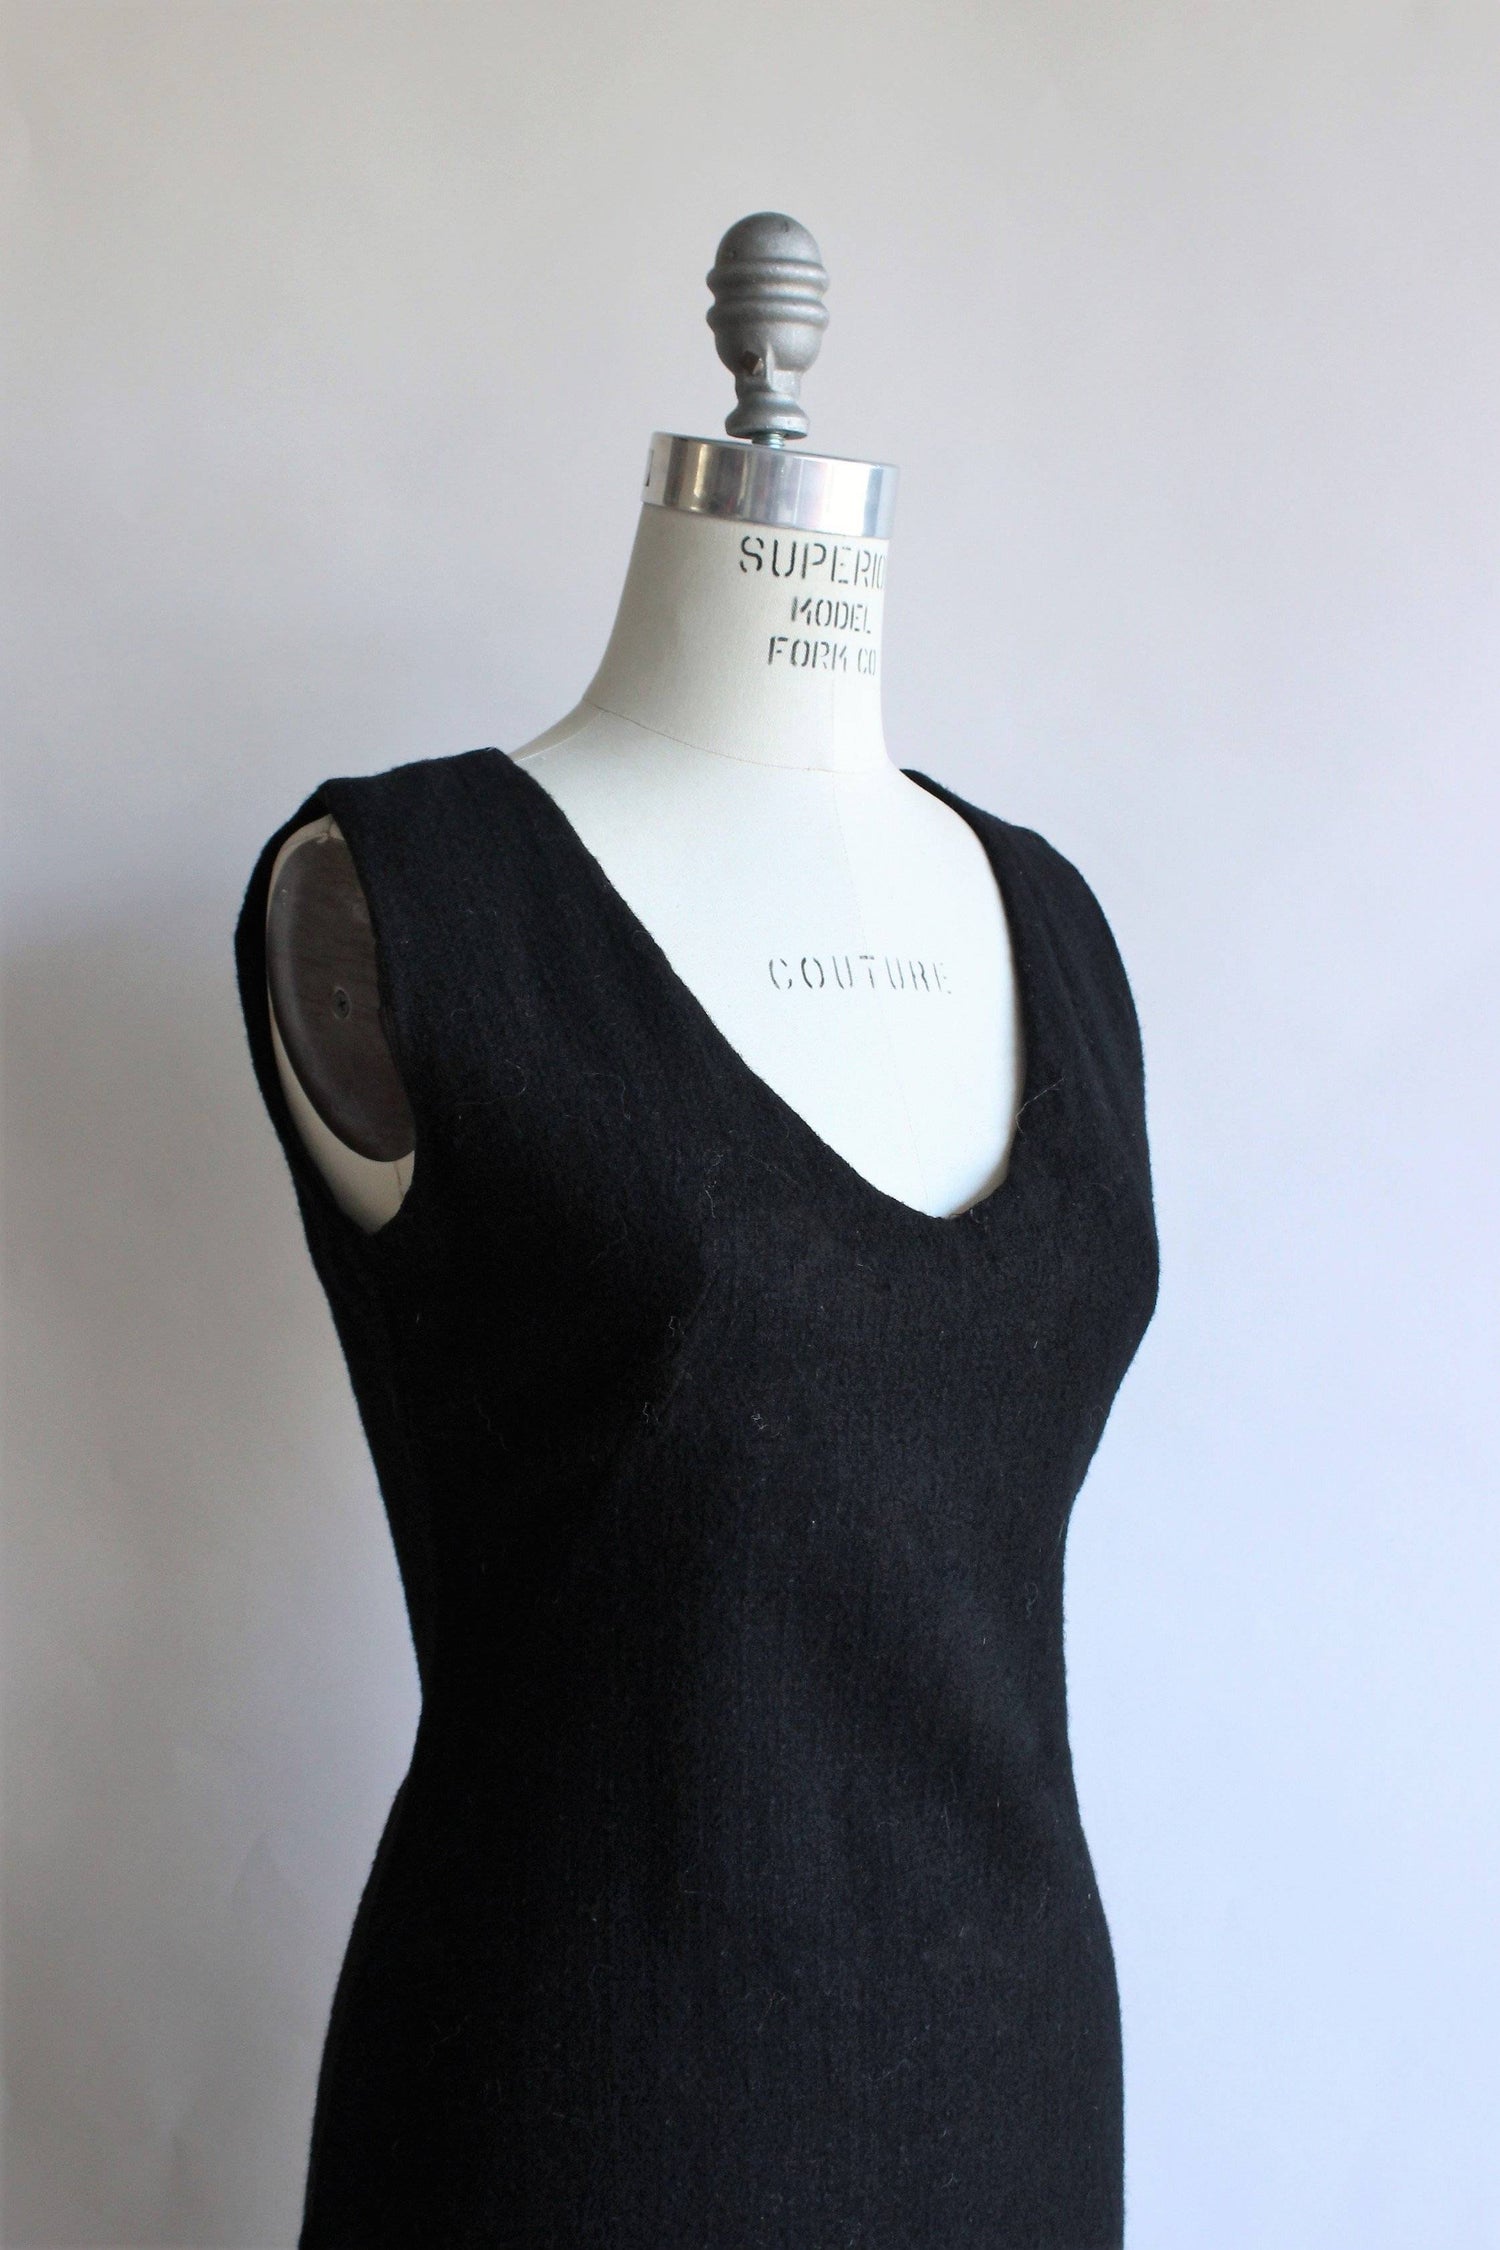 Vintage 1960s Black Wool Mini Dress – Toadstool Farm Vintage